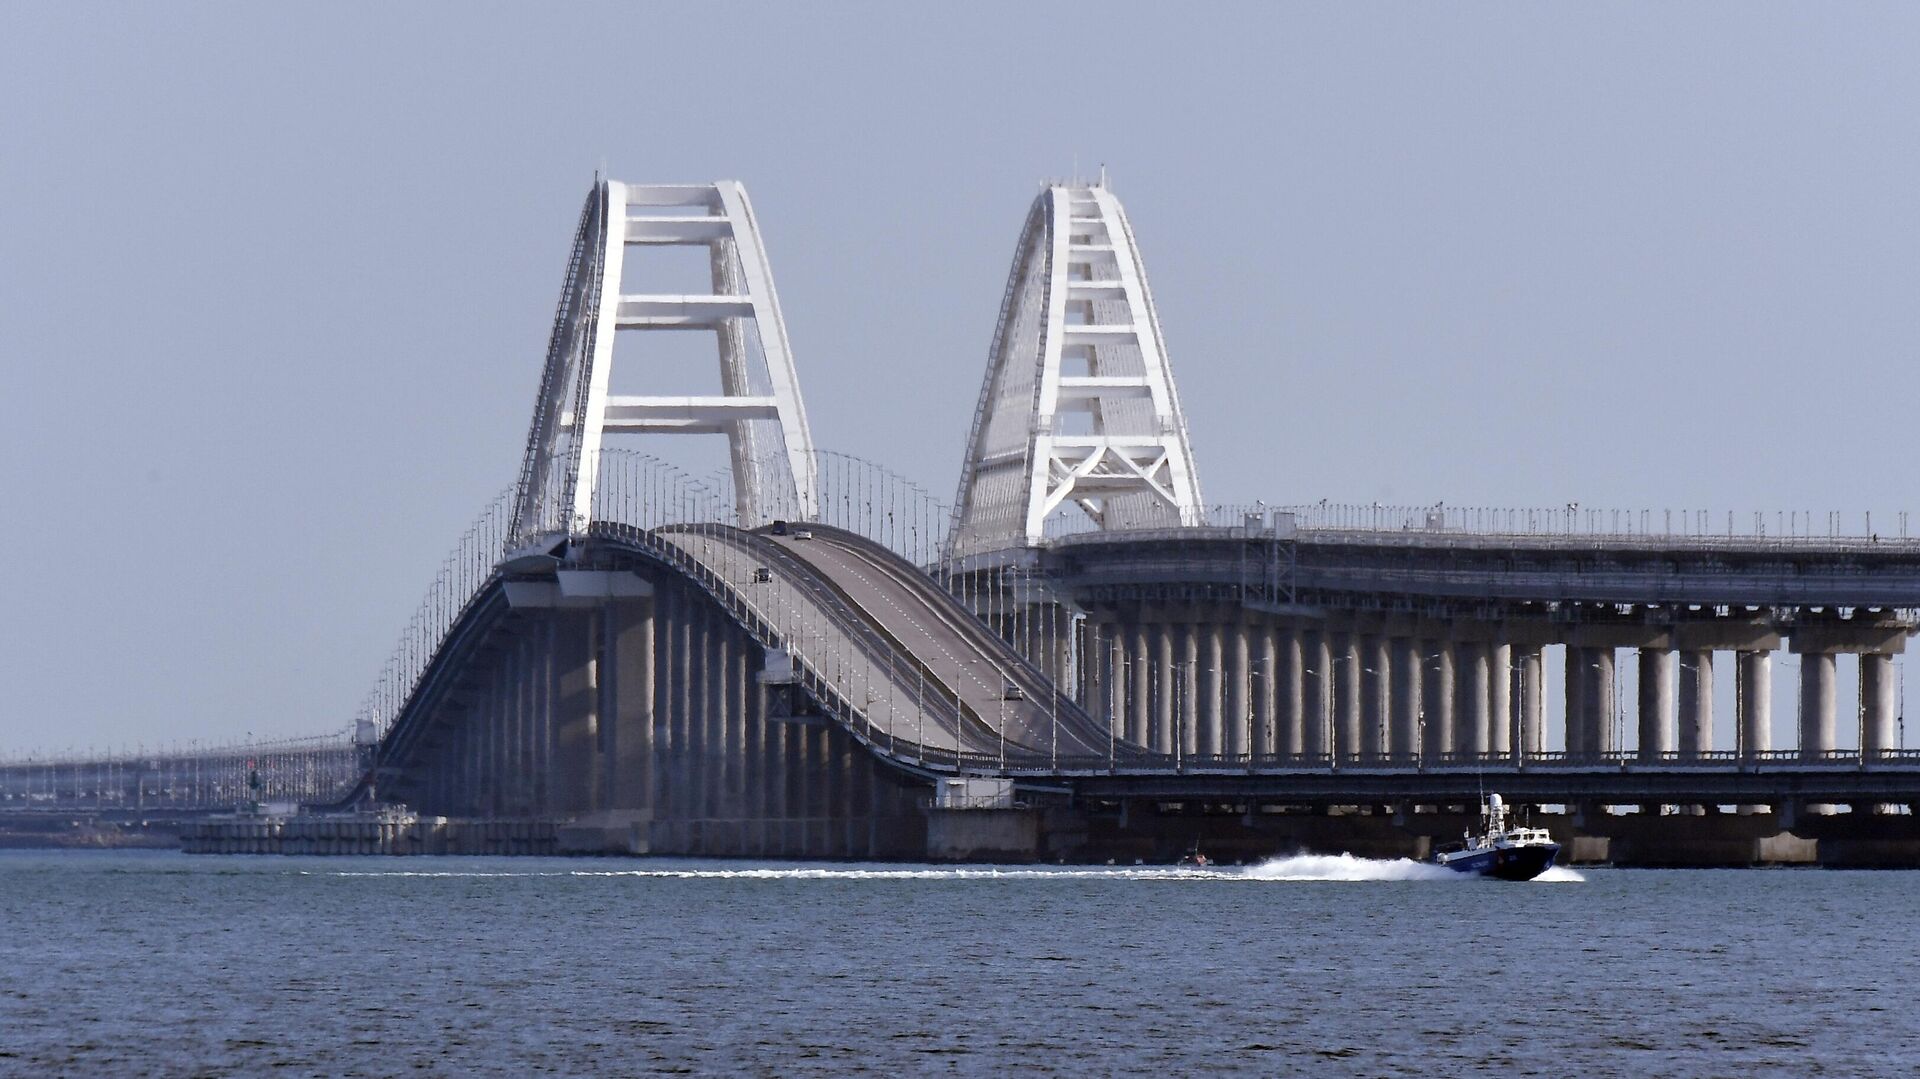 Движение по Крымскому мосту, который был поврежден в результате теракта 17 июля, полностью восстановлено. Об этом сообщил заместитель председателя правительства Марат Хуснуллин.
